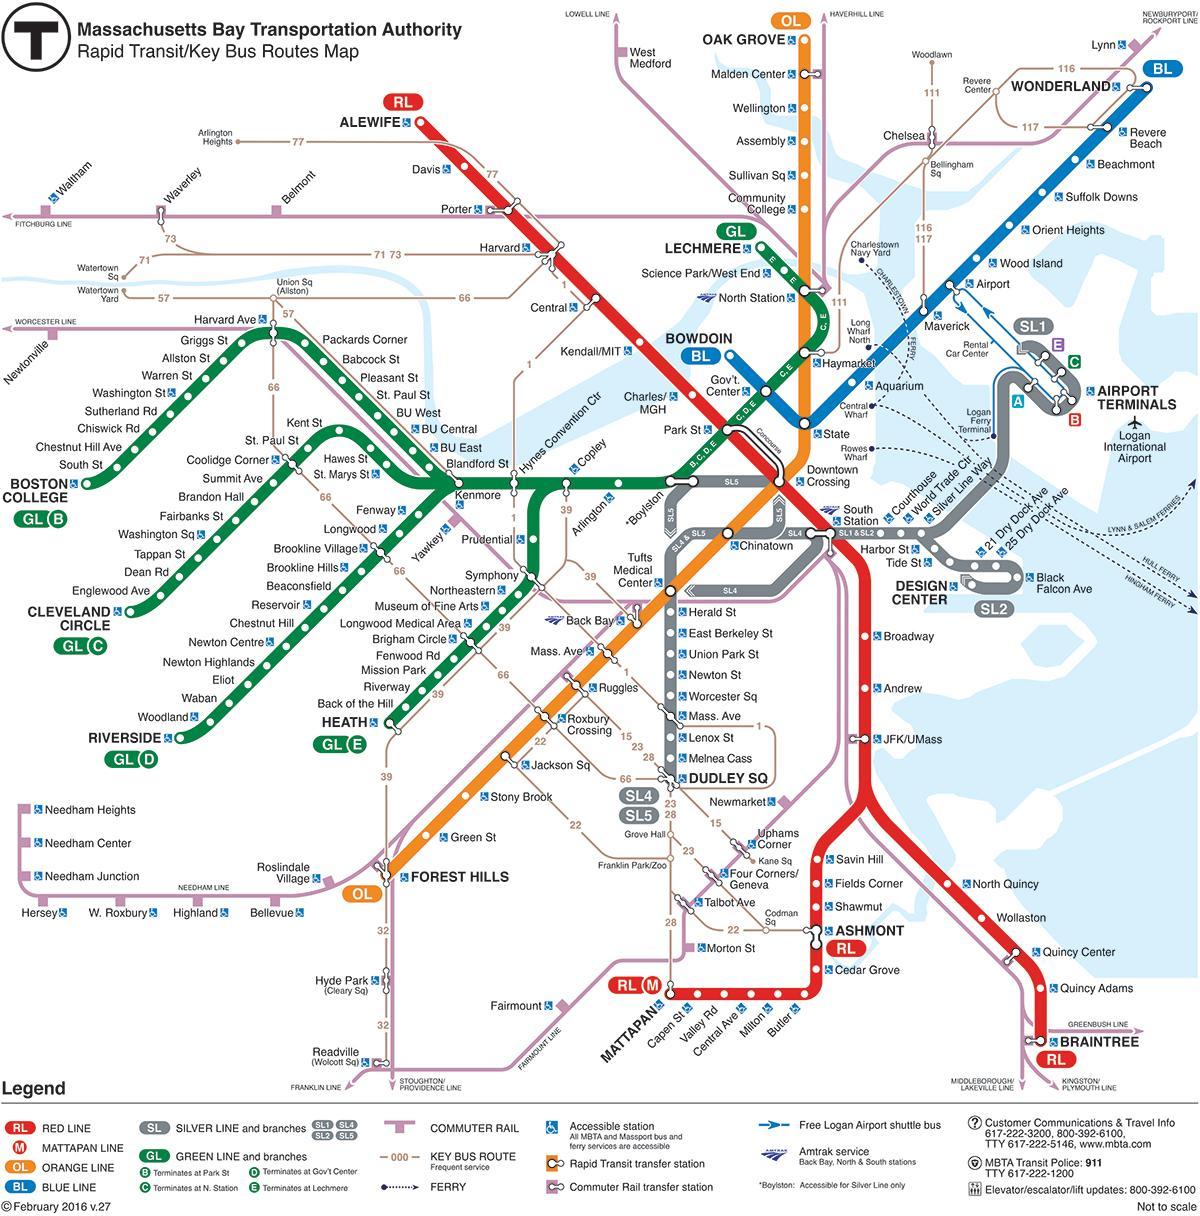 Boston metro-kort over området